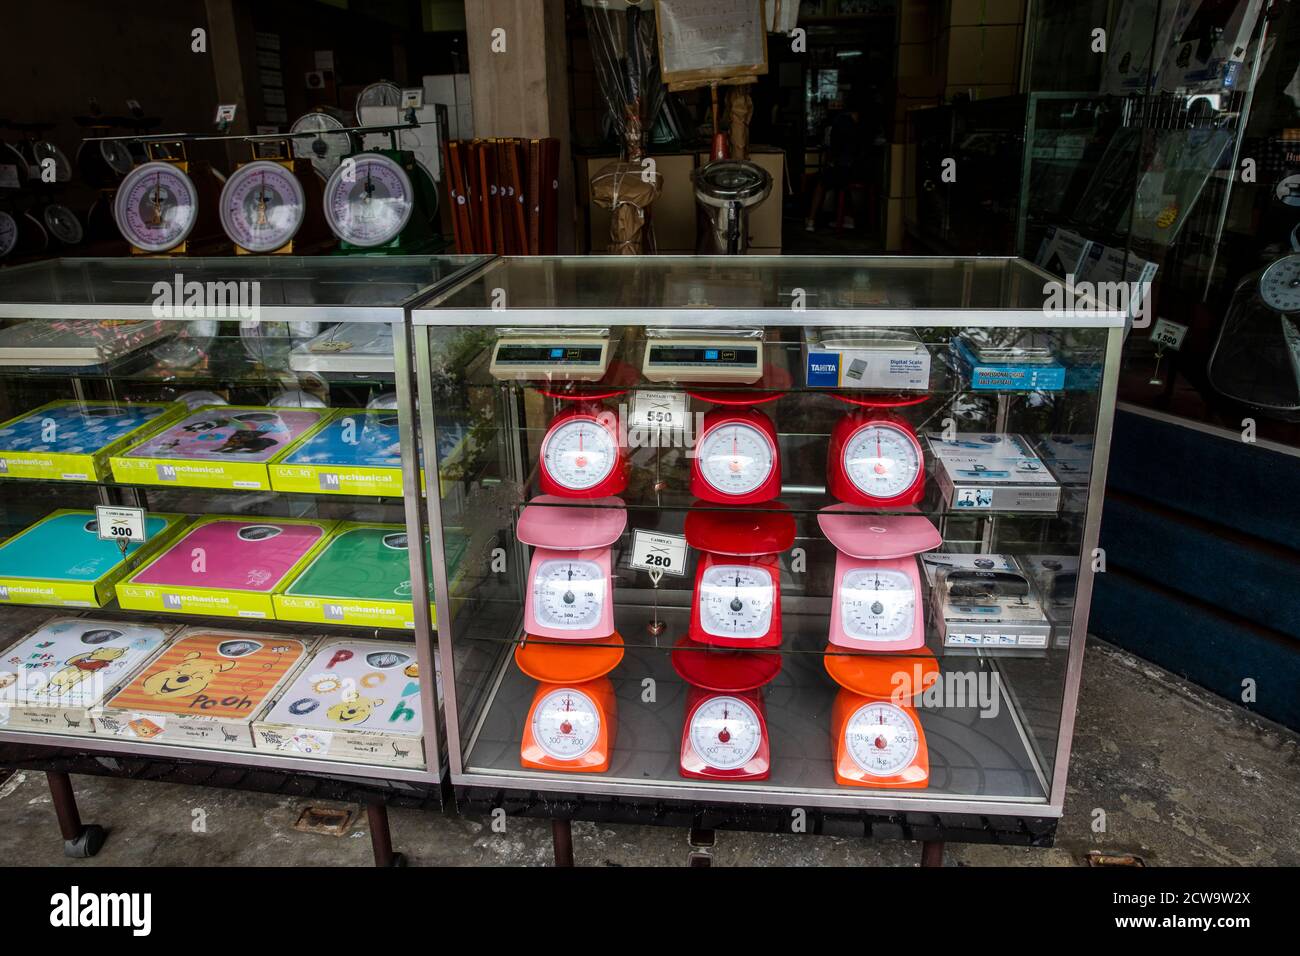 Mit viel Zeit auf ihren Händen, erwarten diese Uhren Käufer in einer Vitrine in Bangkok Chinatown Markt. Stockfoto